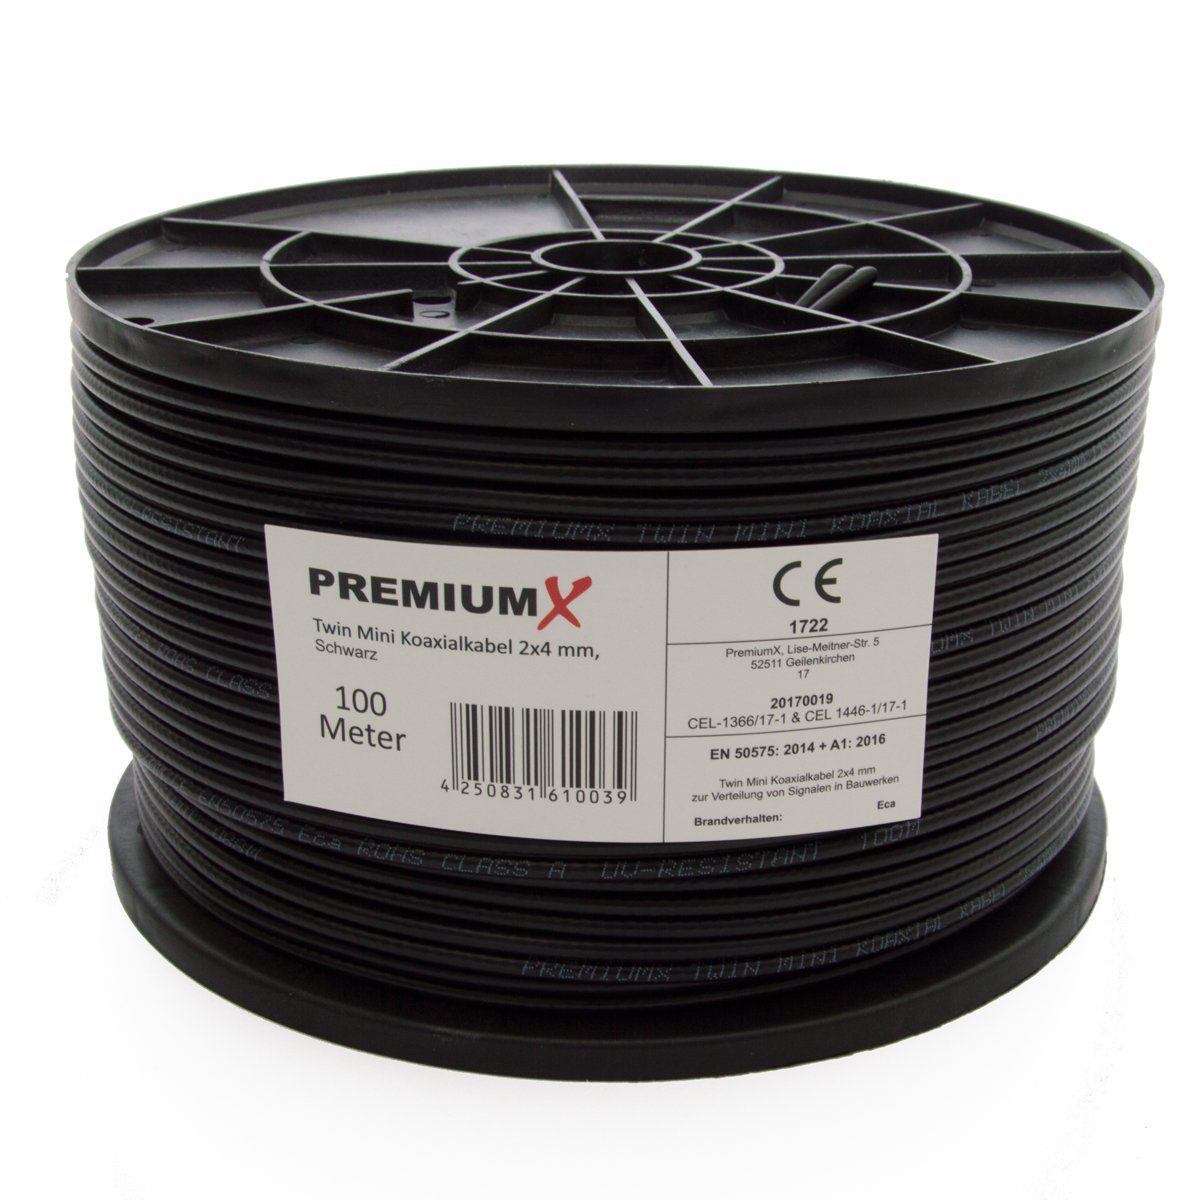 PremiumX 100m Sat Koaxial Kabel 90dB Twin Mini 2 x 4mm extra dünn Schwarz  Antennenkabel 2-fach geschirmt für Sat Kabel DVB-T – Ultra HD 4K 3D TV-Kabel